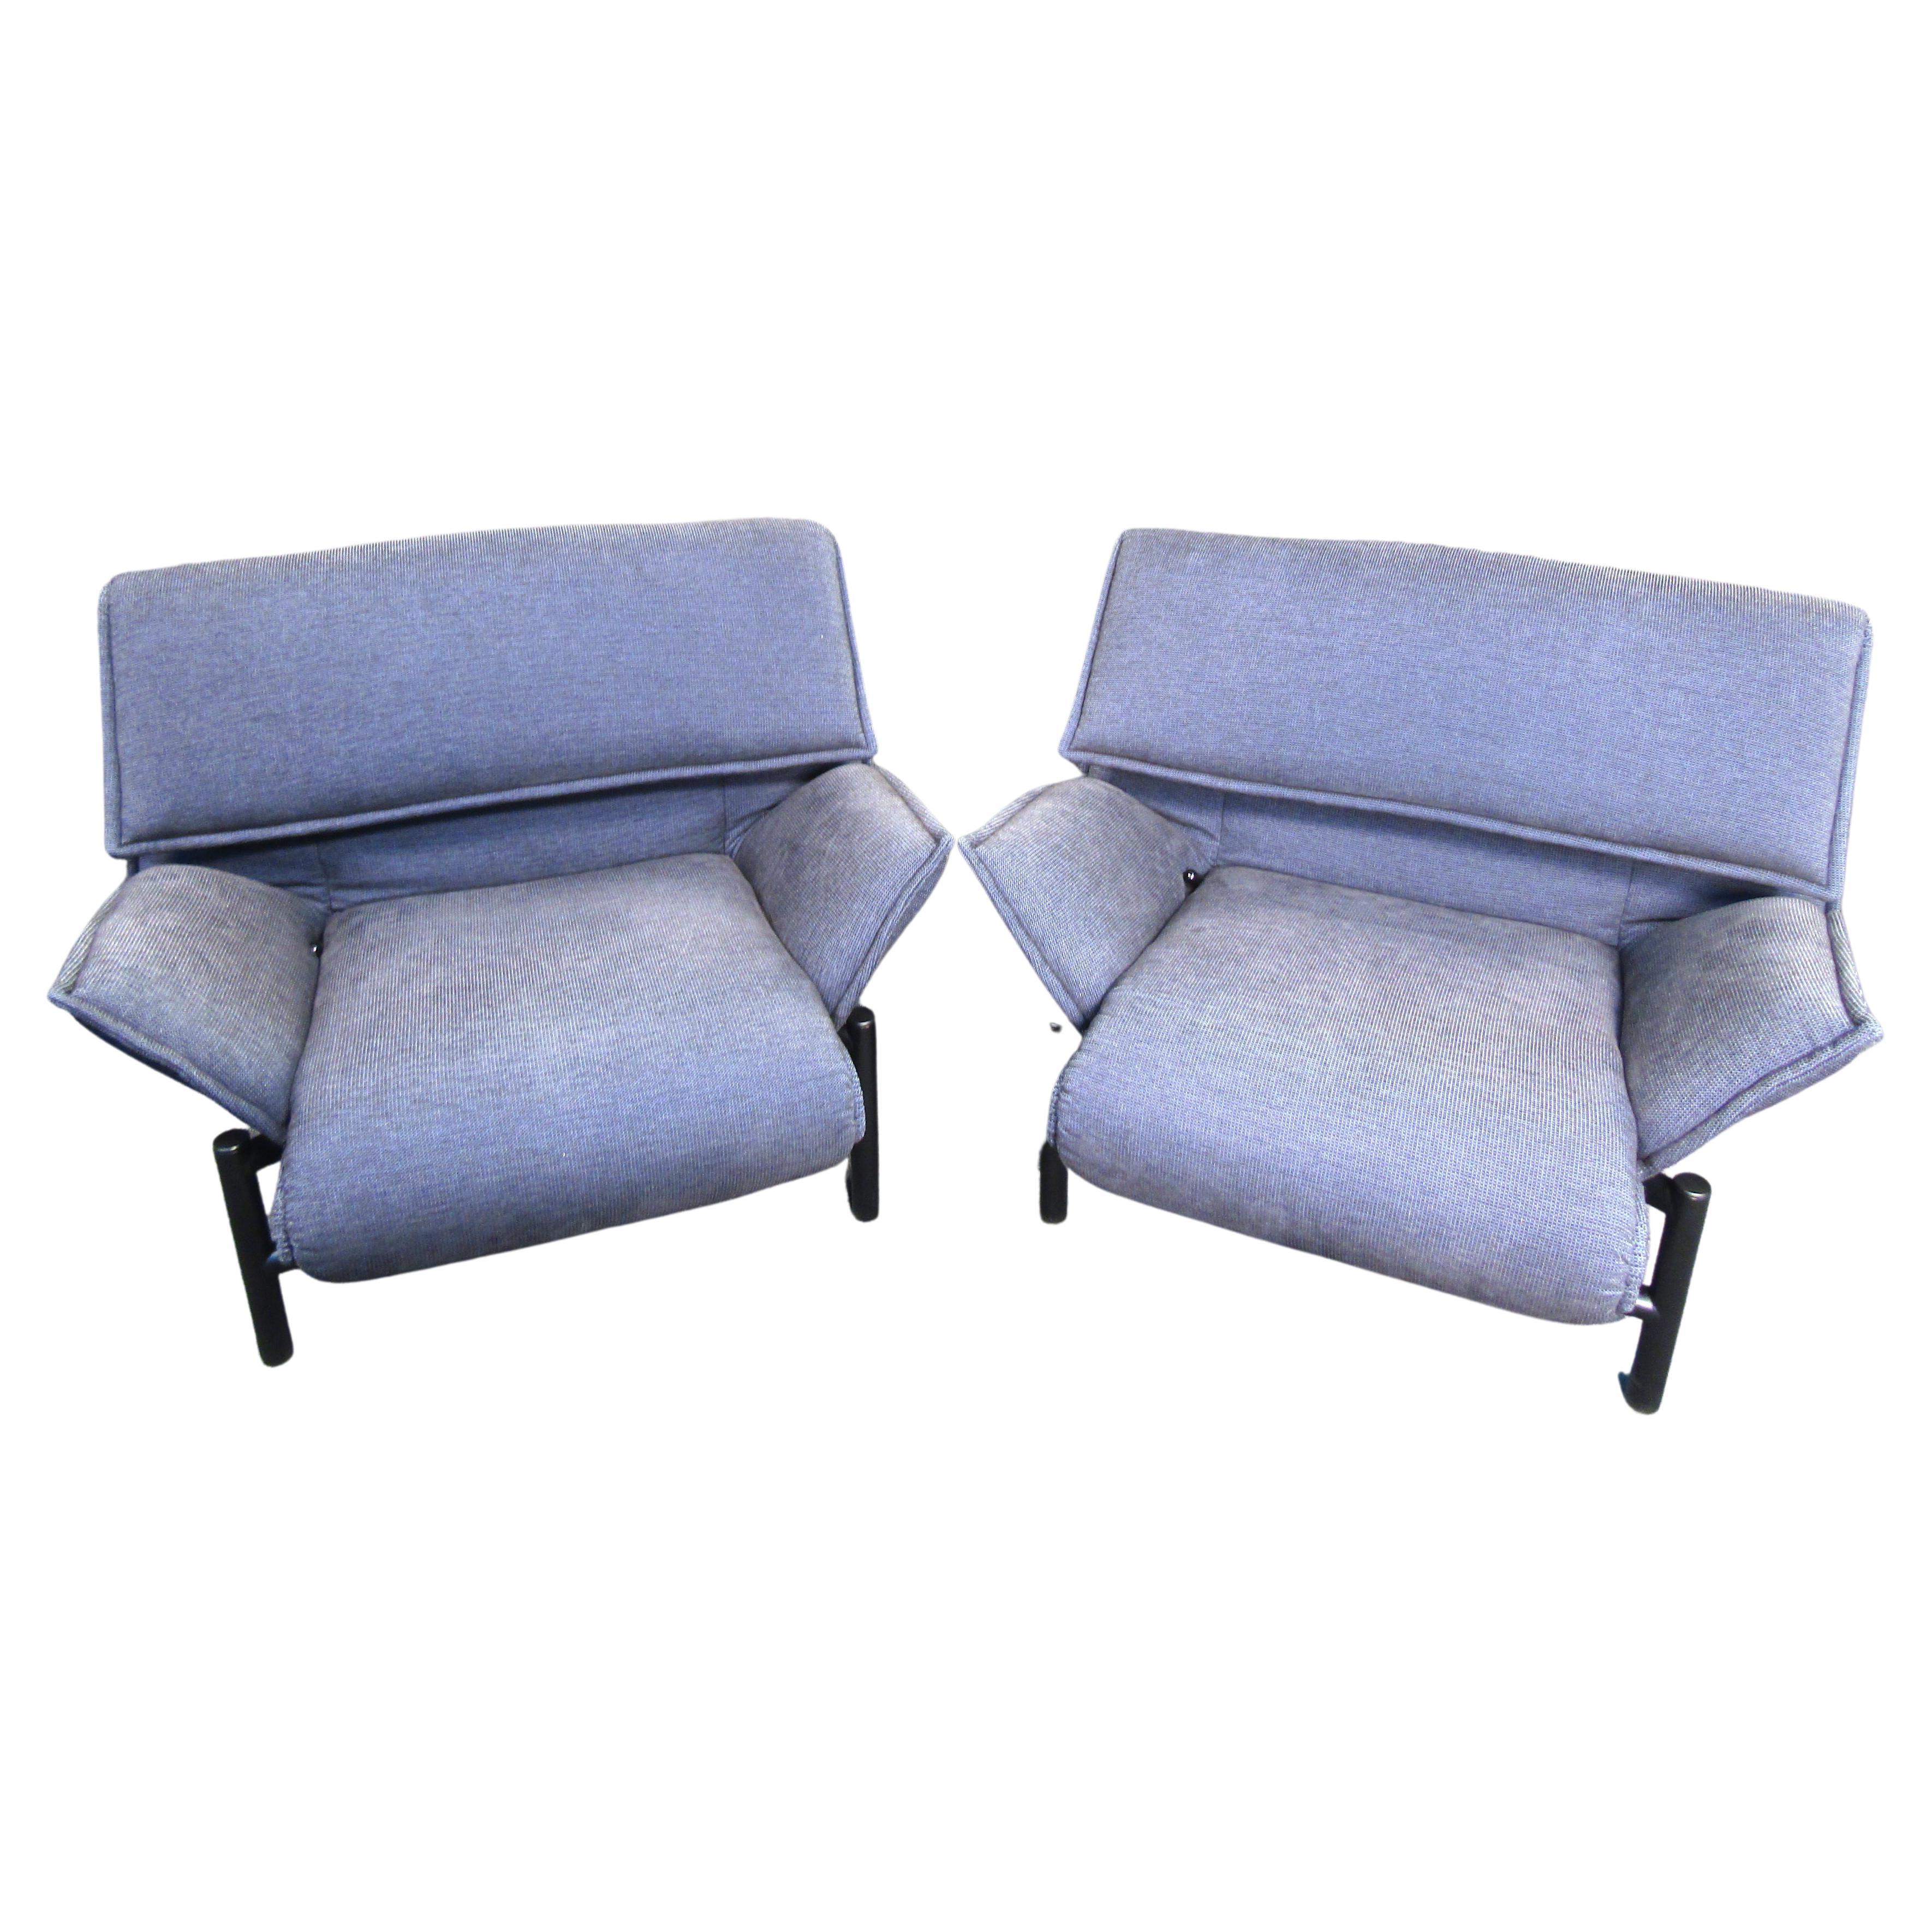 Vico Magistretti for Cassina Italian Modern 'Veranda' Lounge Chairs